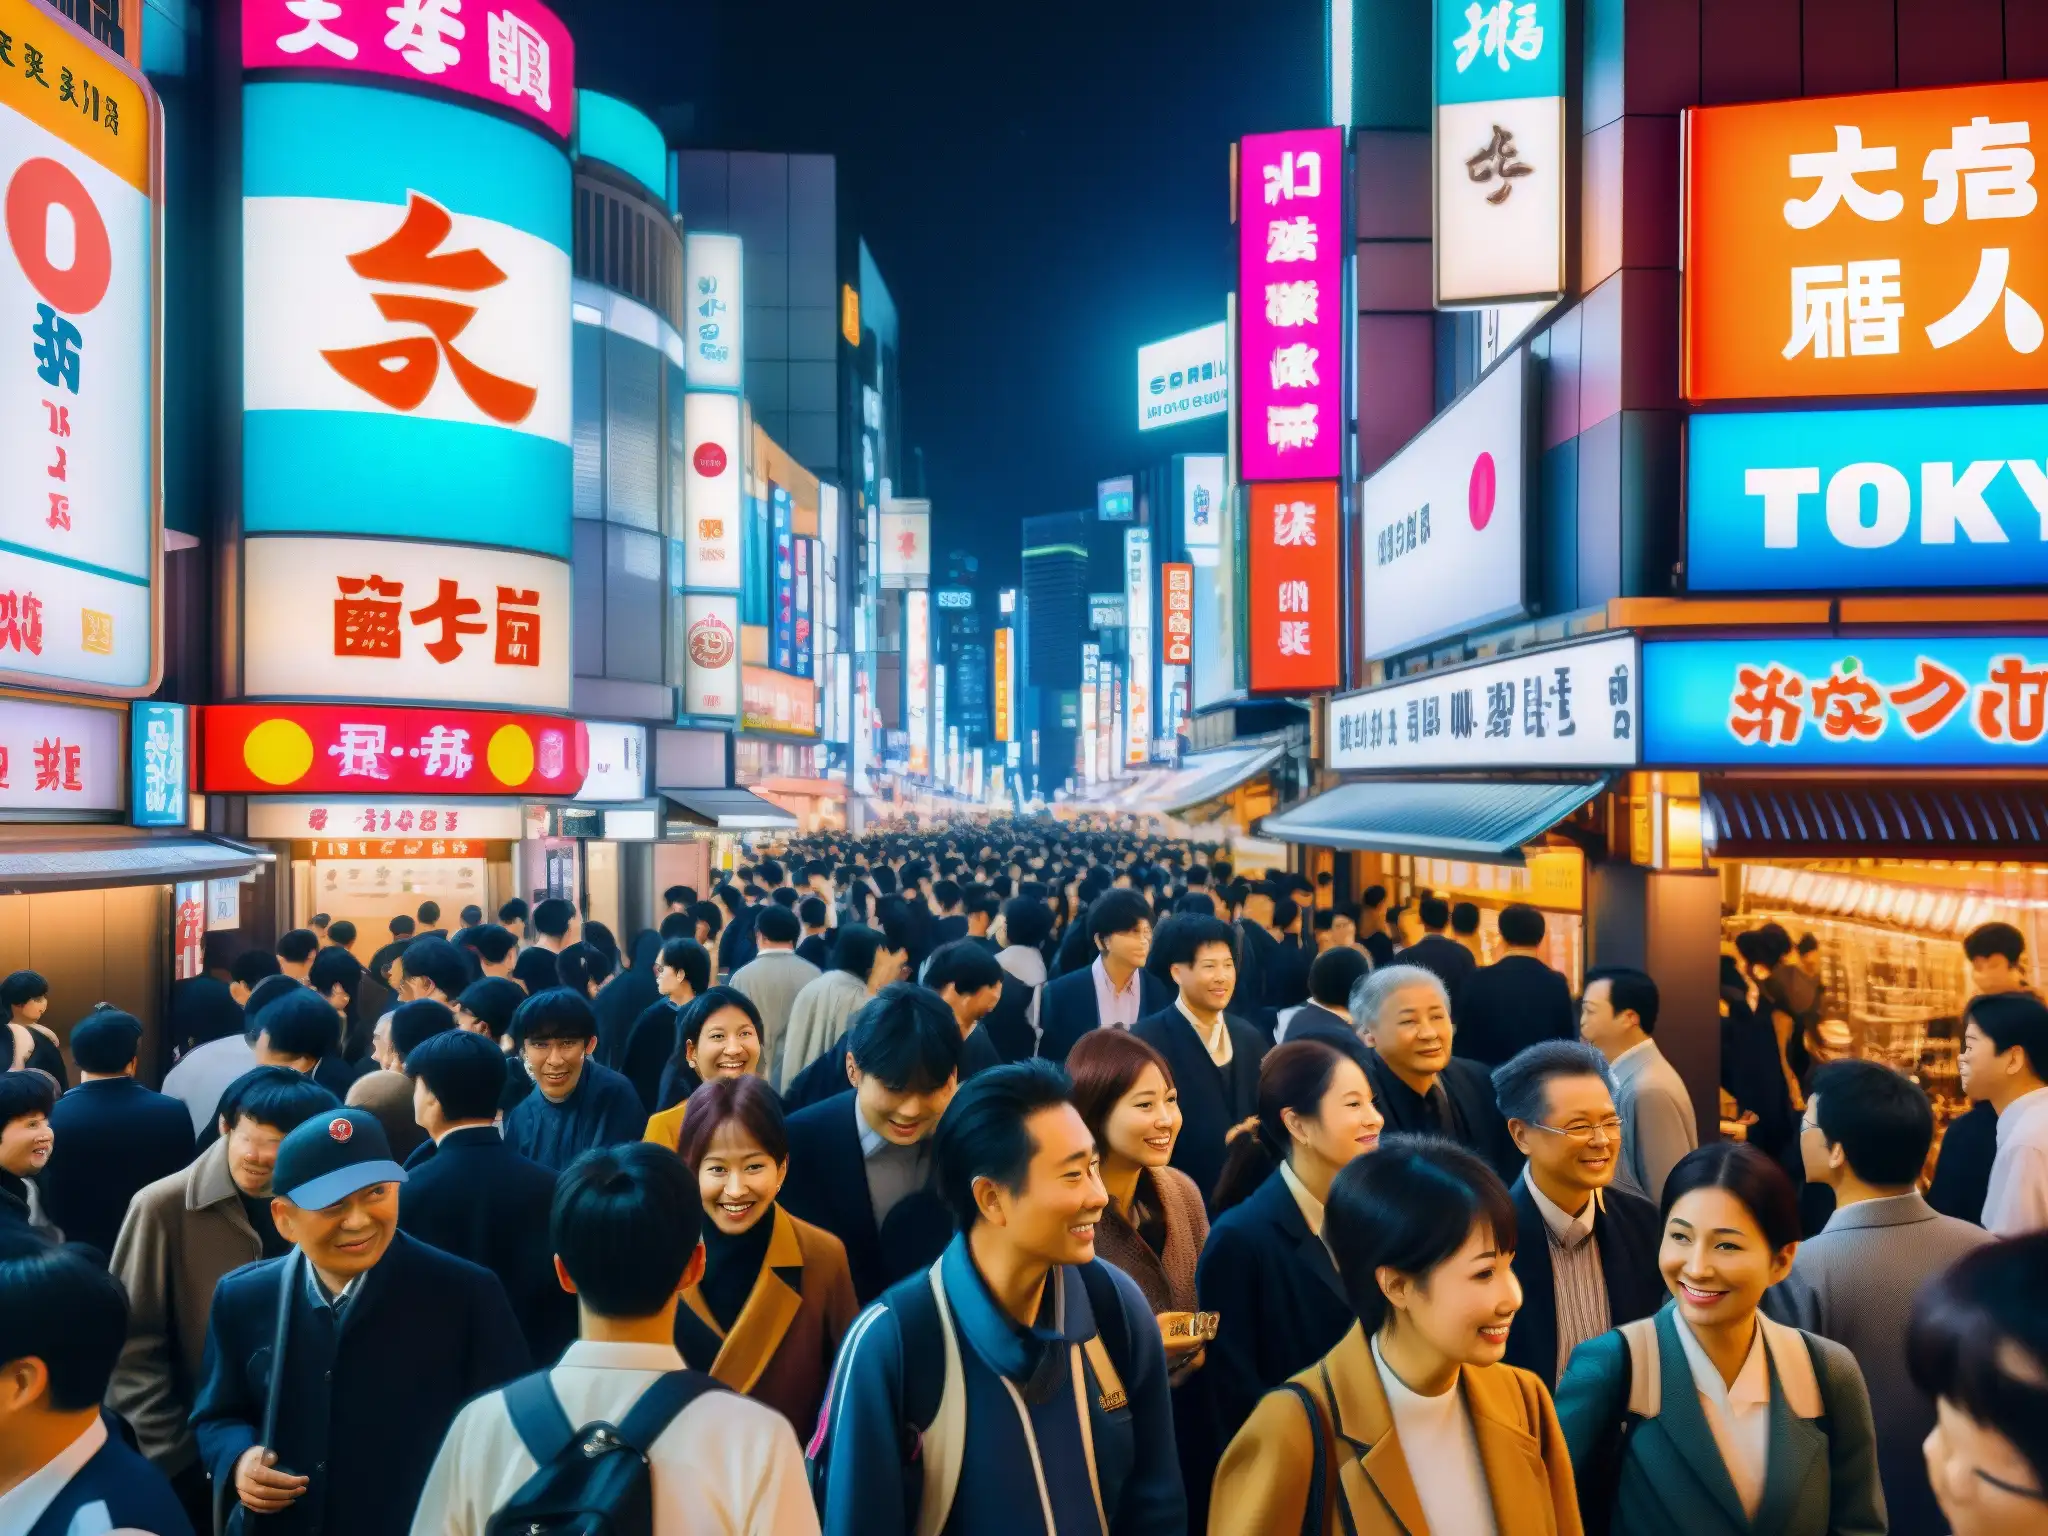 Una animada calle nocturna en Tokio, llena de luces de neón y gente